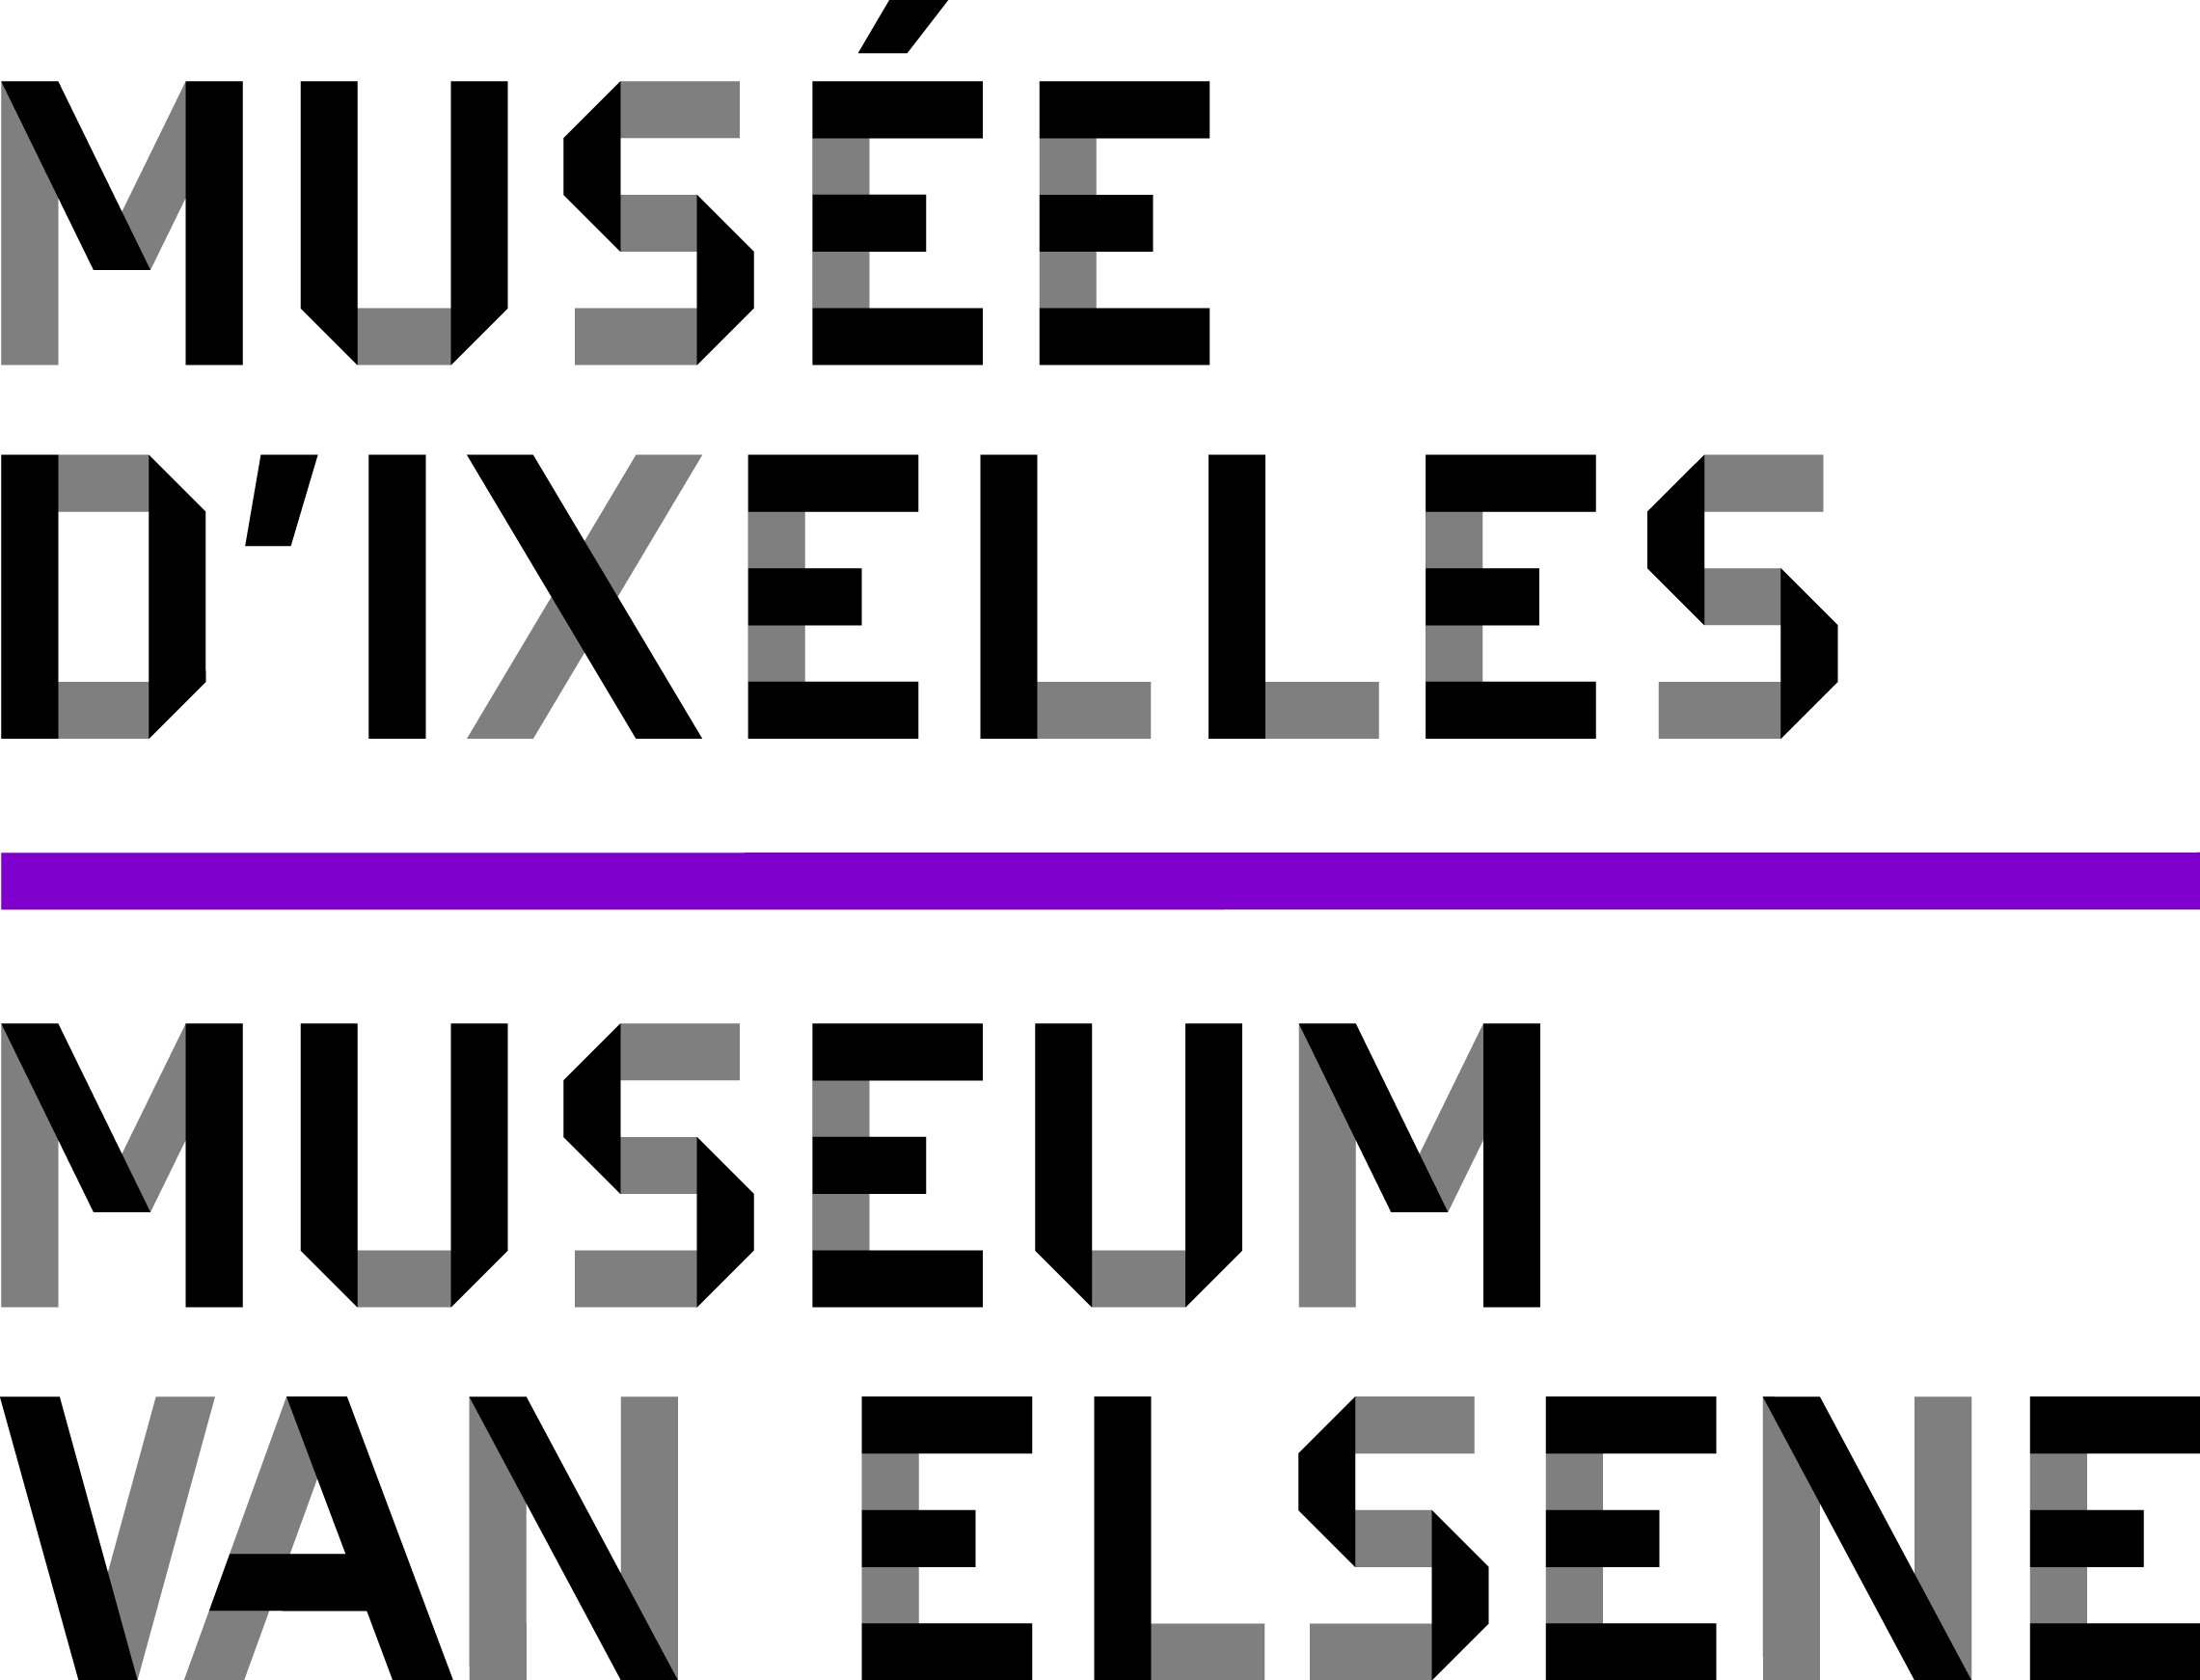 Musée d'Ixelles